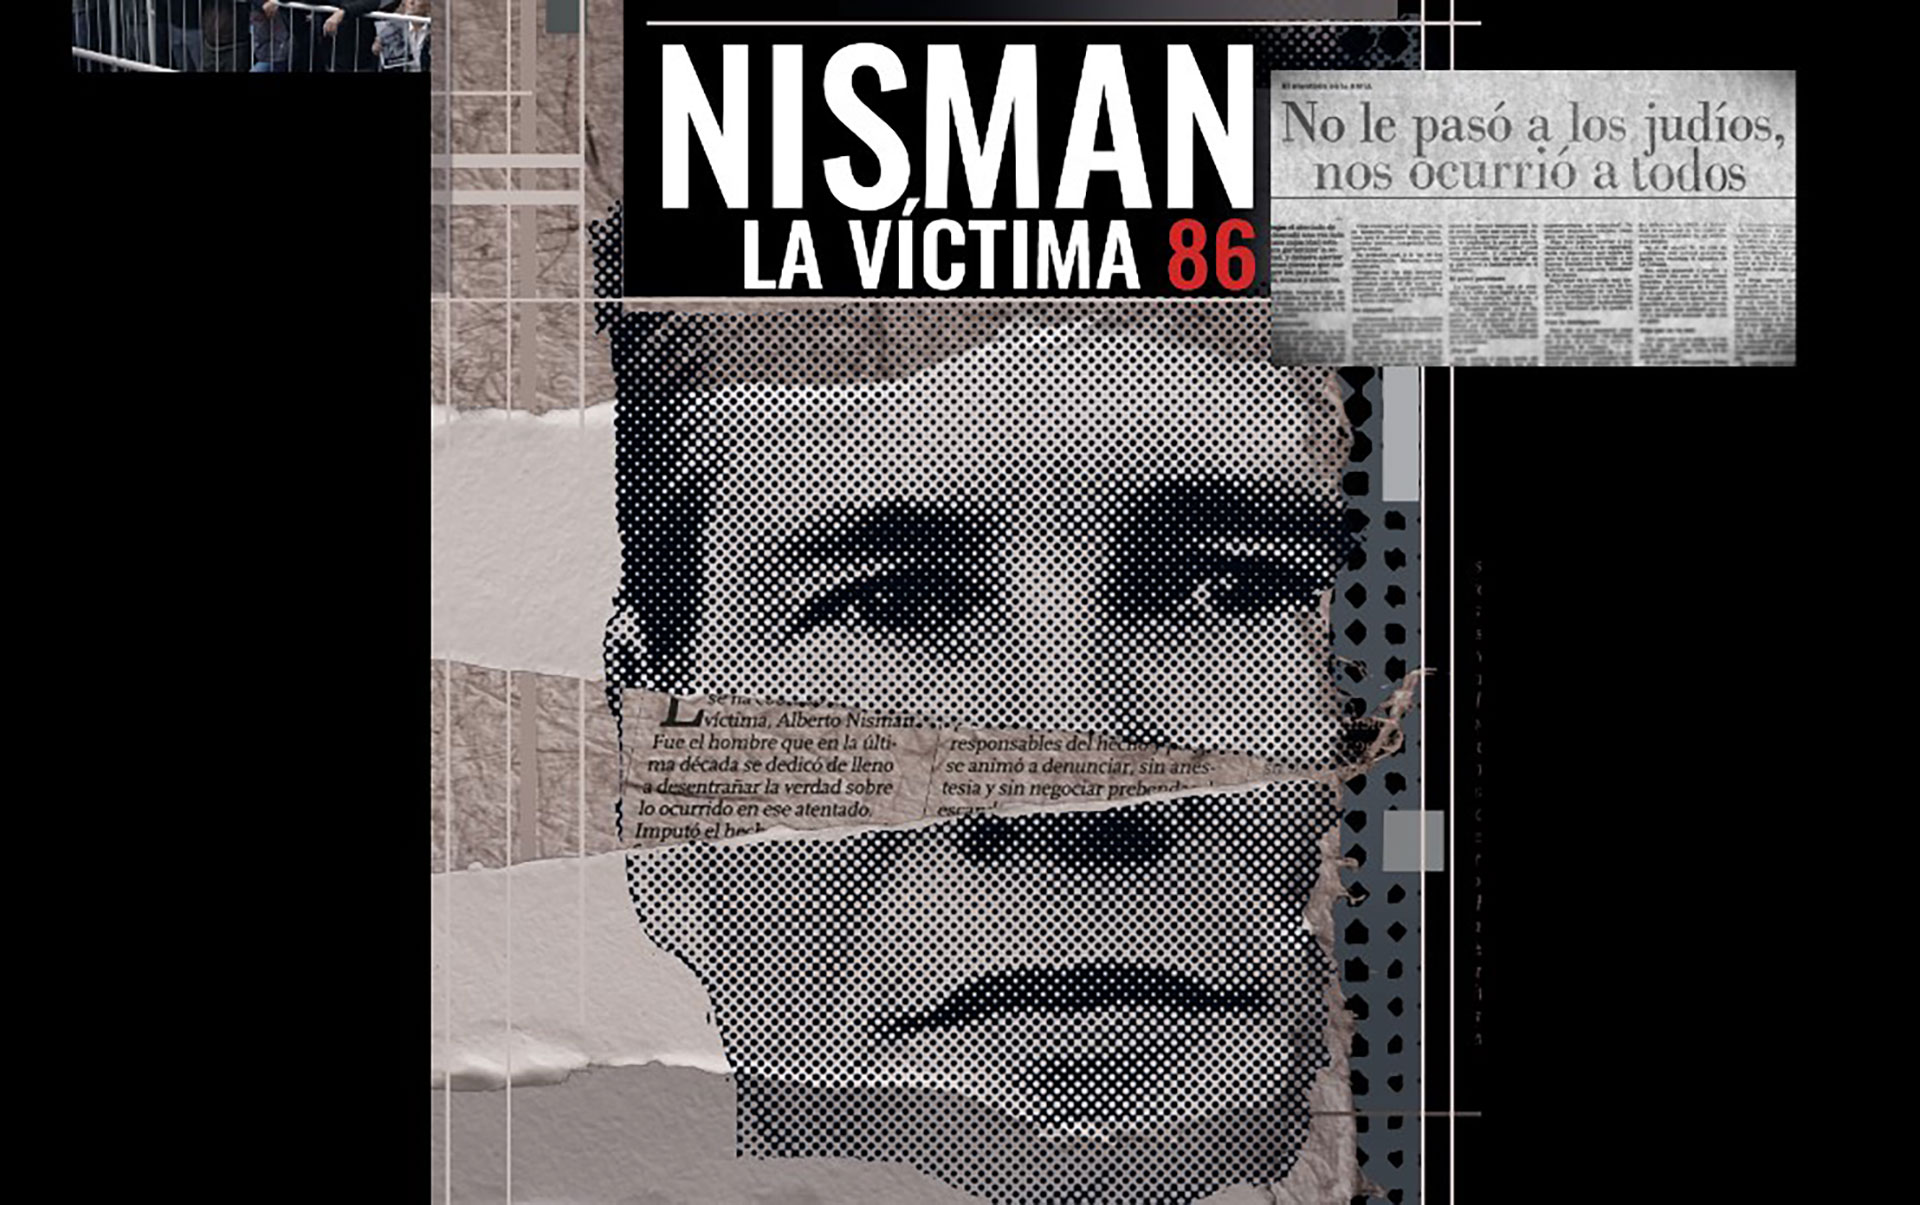 Este sábado se estrena el documental "Nisman, la víctima 86", producida por Waldo Wolff y Delia Sisro